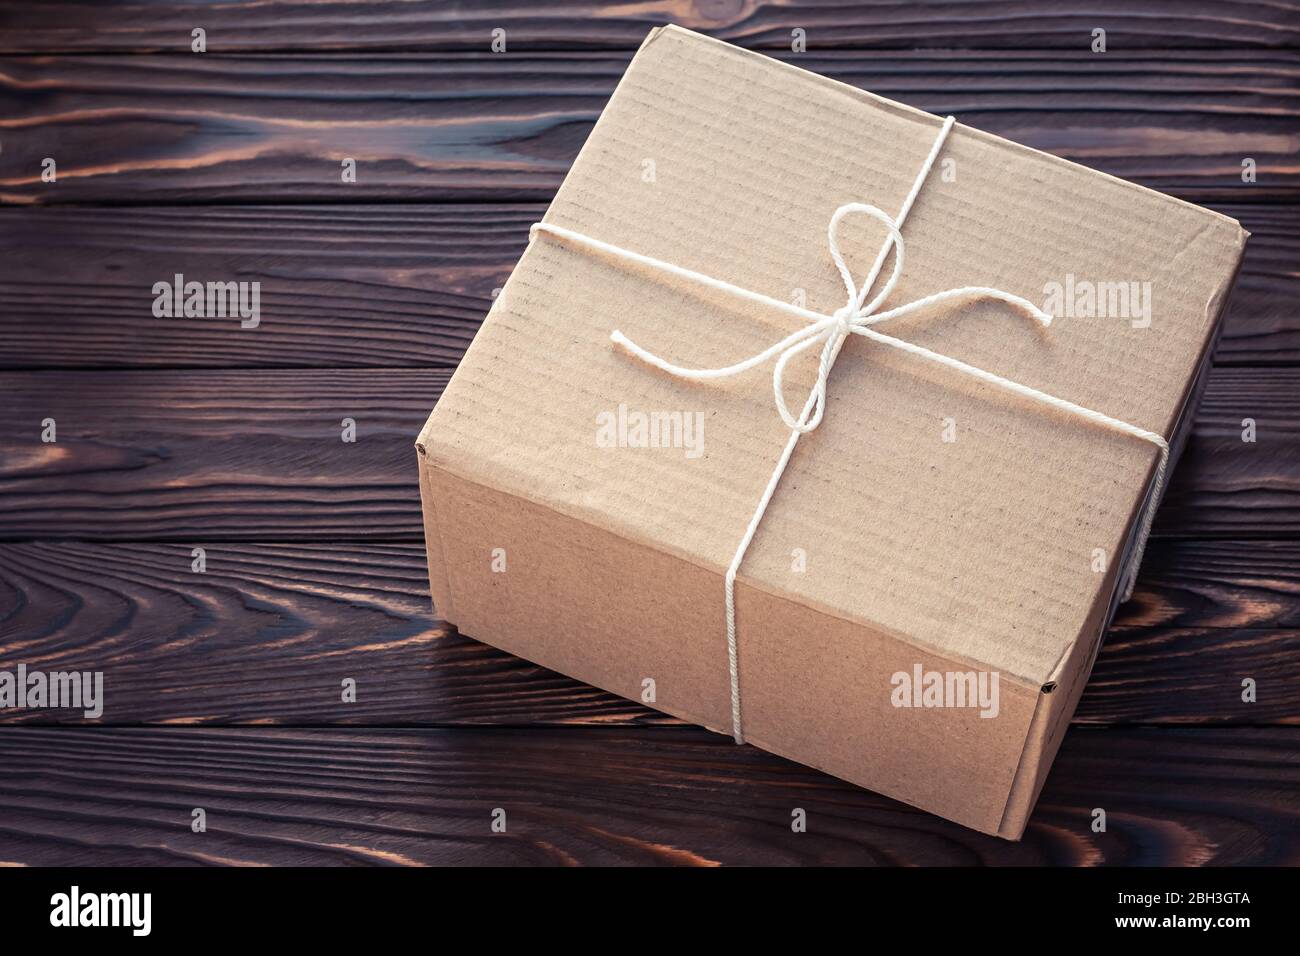 Boîte en carton marron attachée de fil sur des panneaux en bois sombre. Concept de service de livraison de colis Banque D'Images